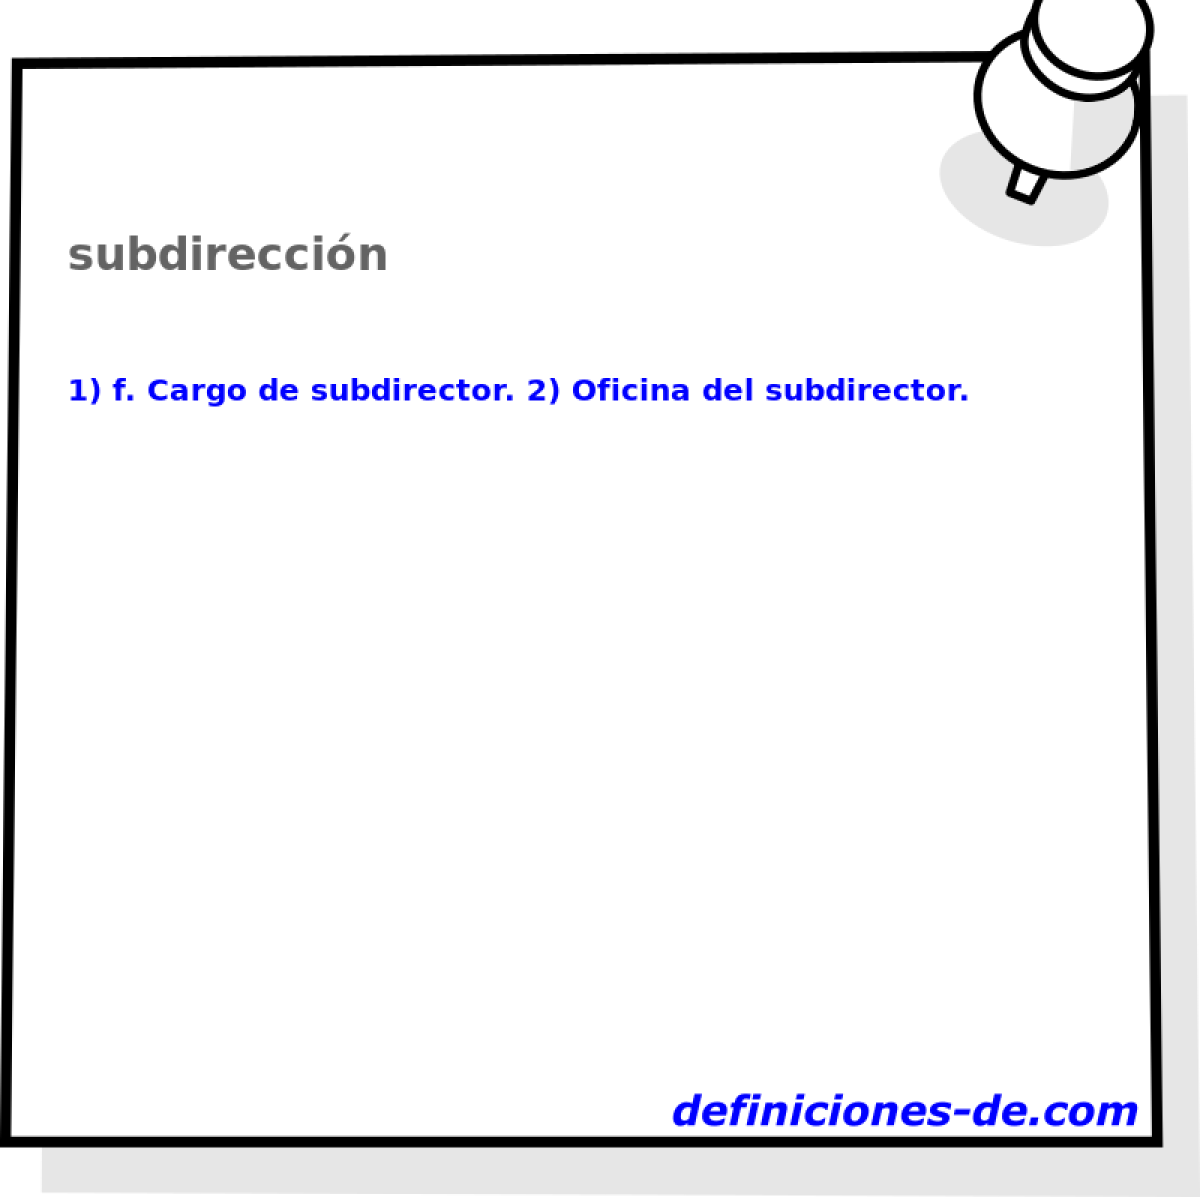 subdireccin 